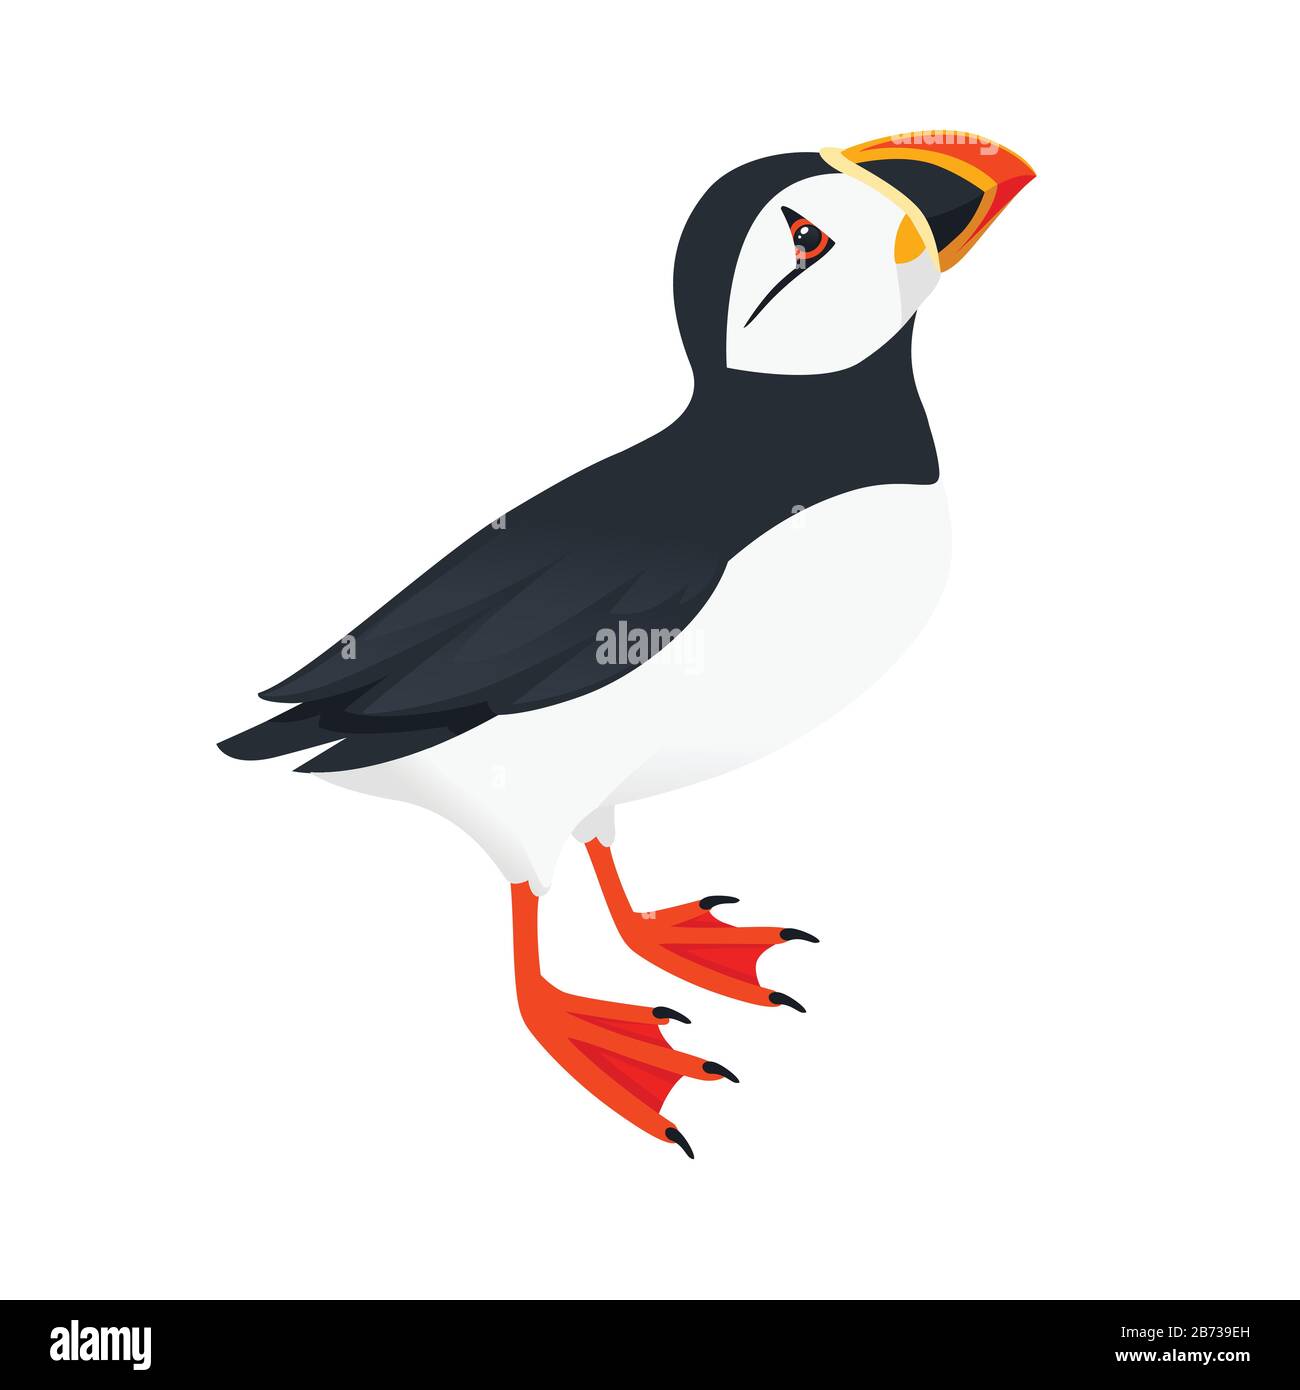 Oiseau de macareux de l'Atlantique Rejetez un regard sur le dessin d'animal de caricature supérieur illustration vectorielle plate isolée sur fond blanc. Illustration de Vecteur